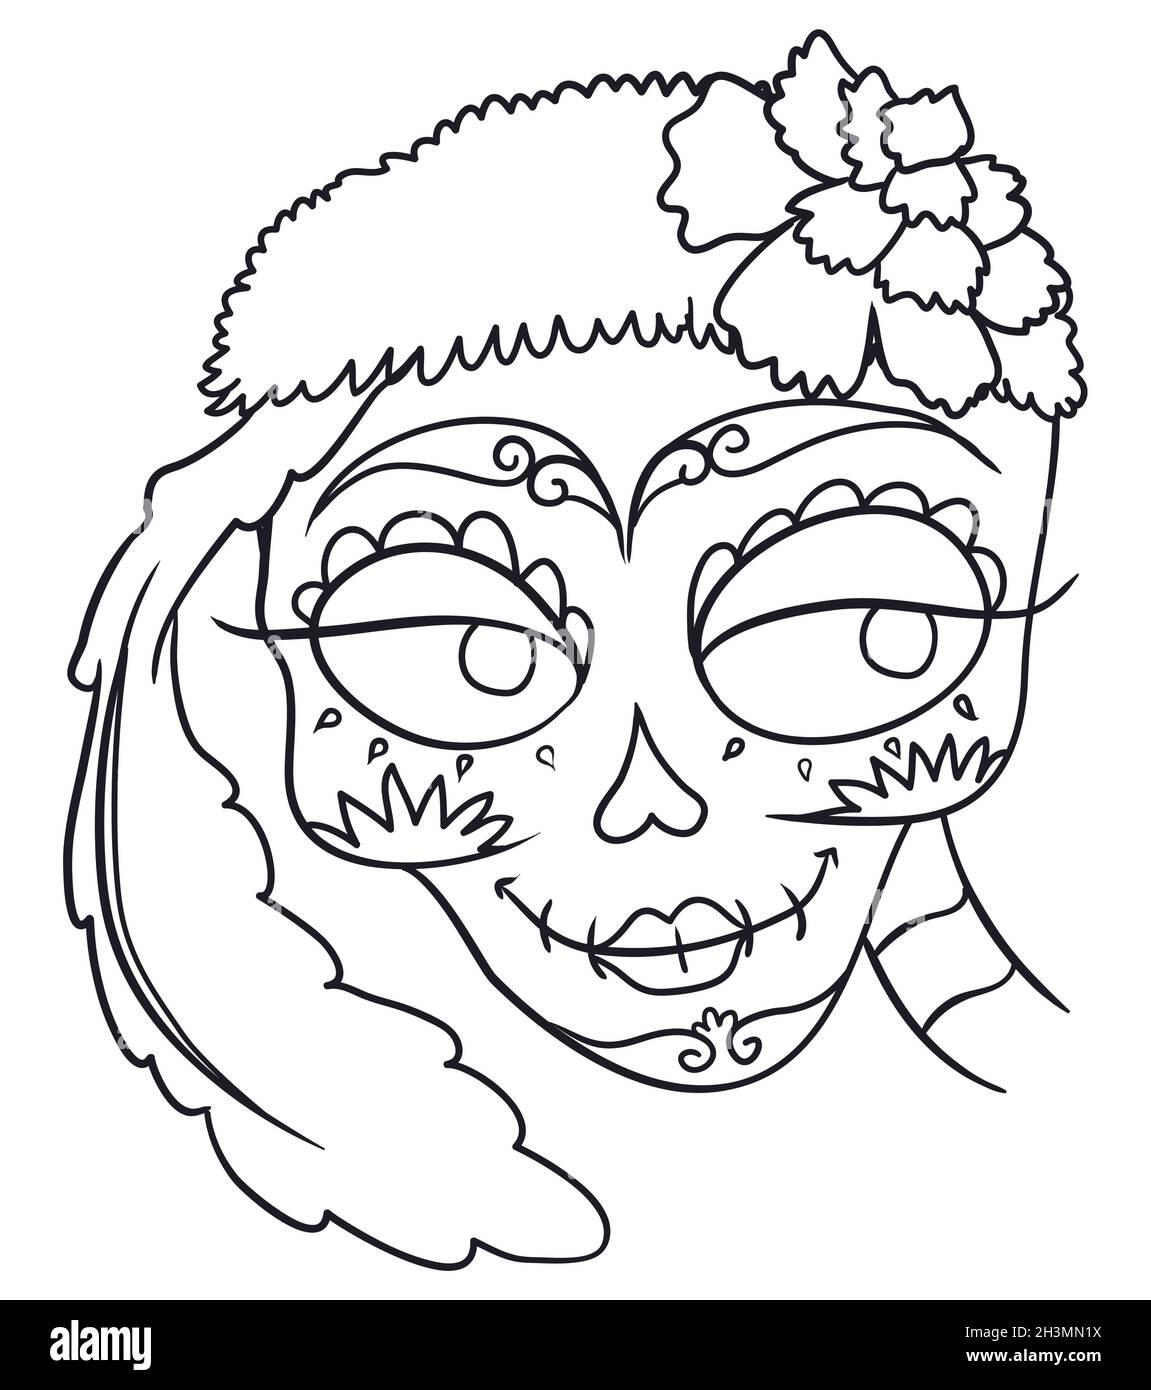 Zeichnung der eleganten Catrina mit pelzigen Bandana, Blume, Feder und traditionellen mexikanischen Dekorationen auf dem Gesicht, für die Feier des mexikanischen Totentages Stock Vektor